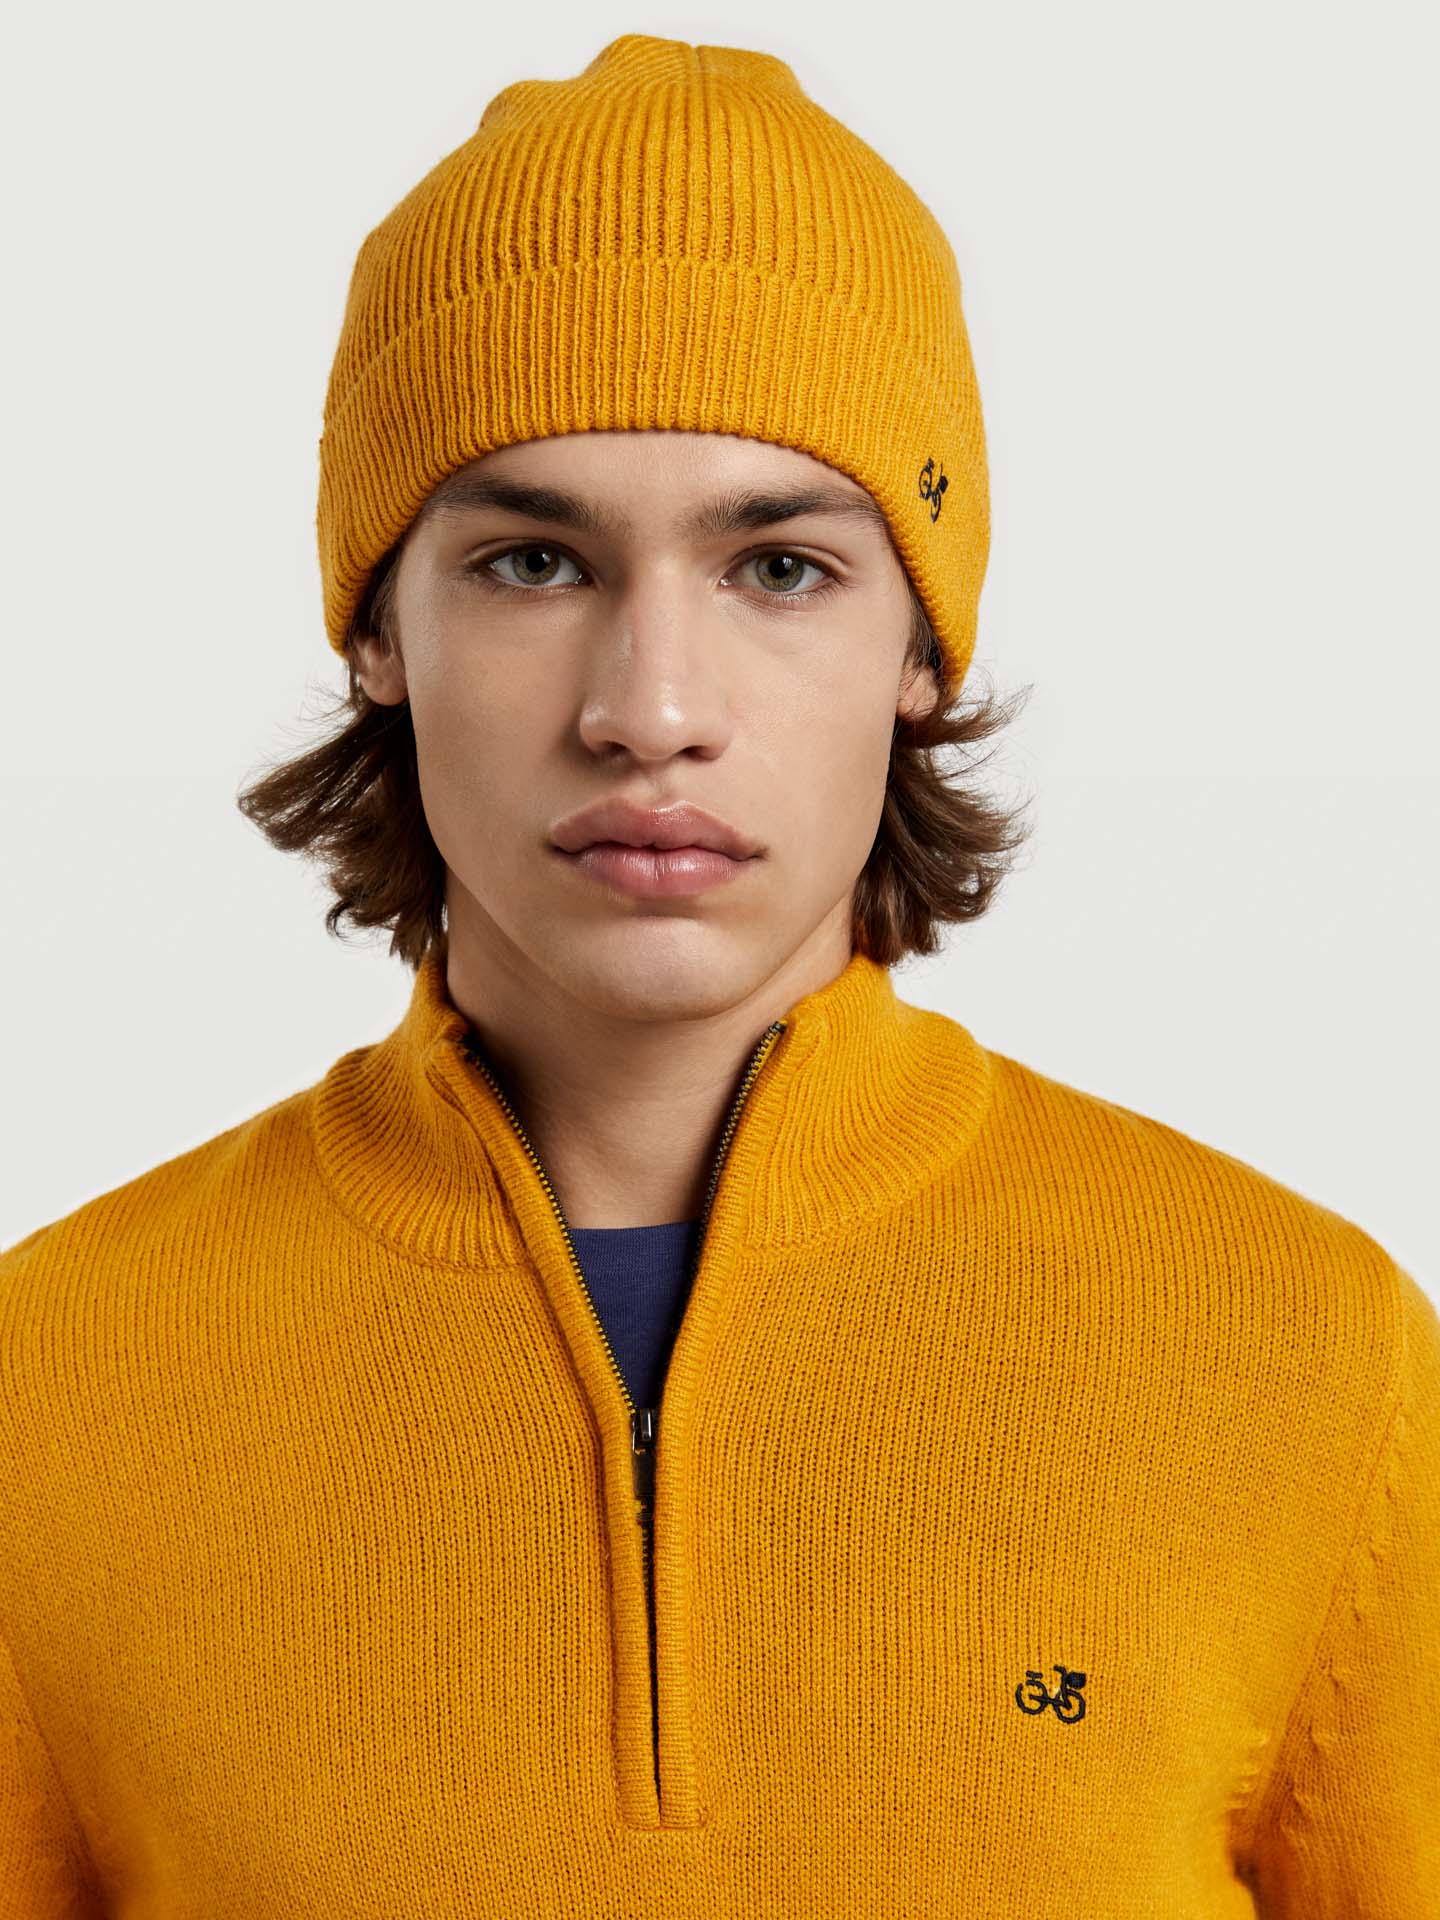 Sweater Yellow Casual Man